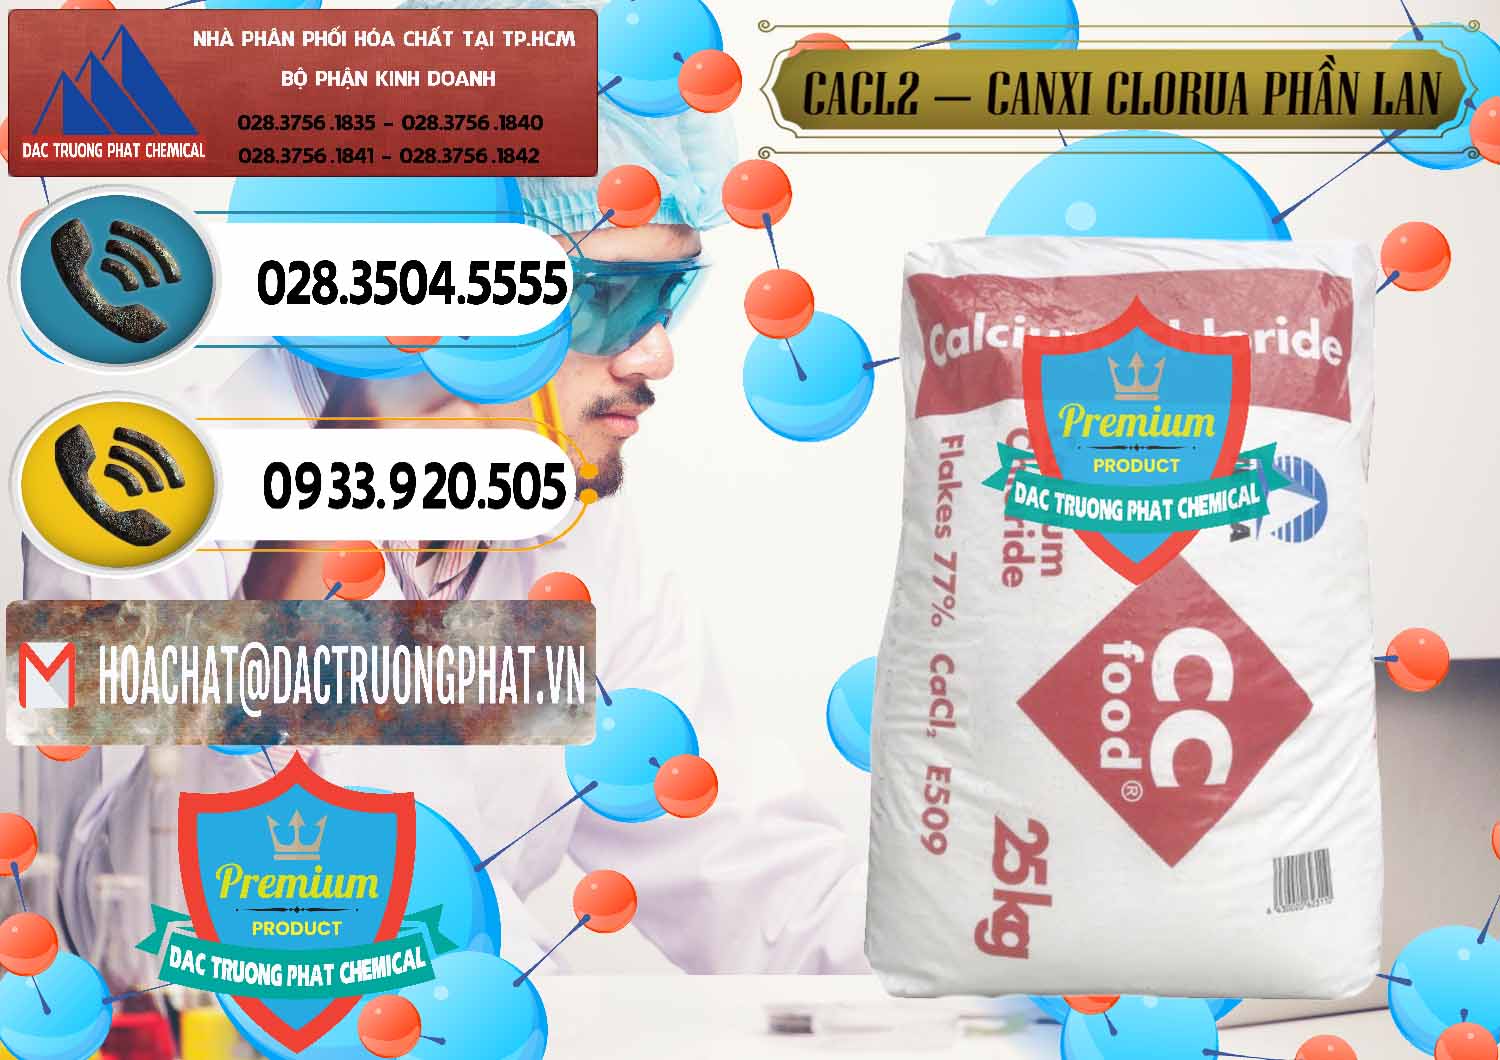 Công ty chuyên bán ( cung cấp ) CaCl2 – Canxi Clorua Dạng Vảy 77% Tetra Phần Lan Finland - 0353 - Chuyên cung cấp & bán hóa chất tại TP.HCM - hoachatdetnhuom.vn